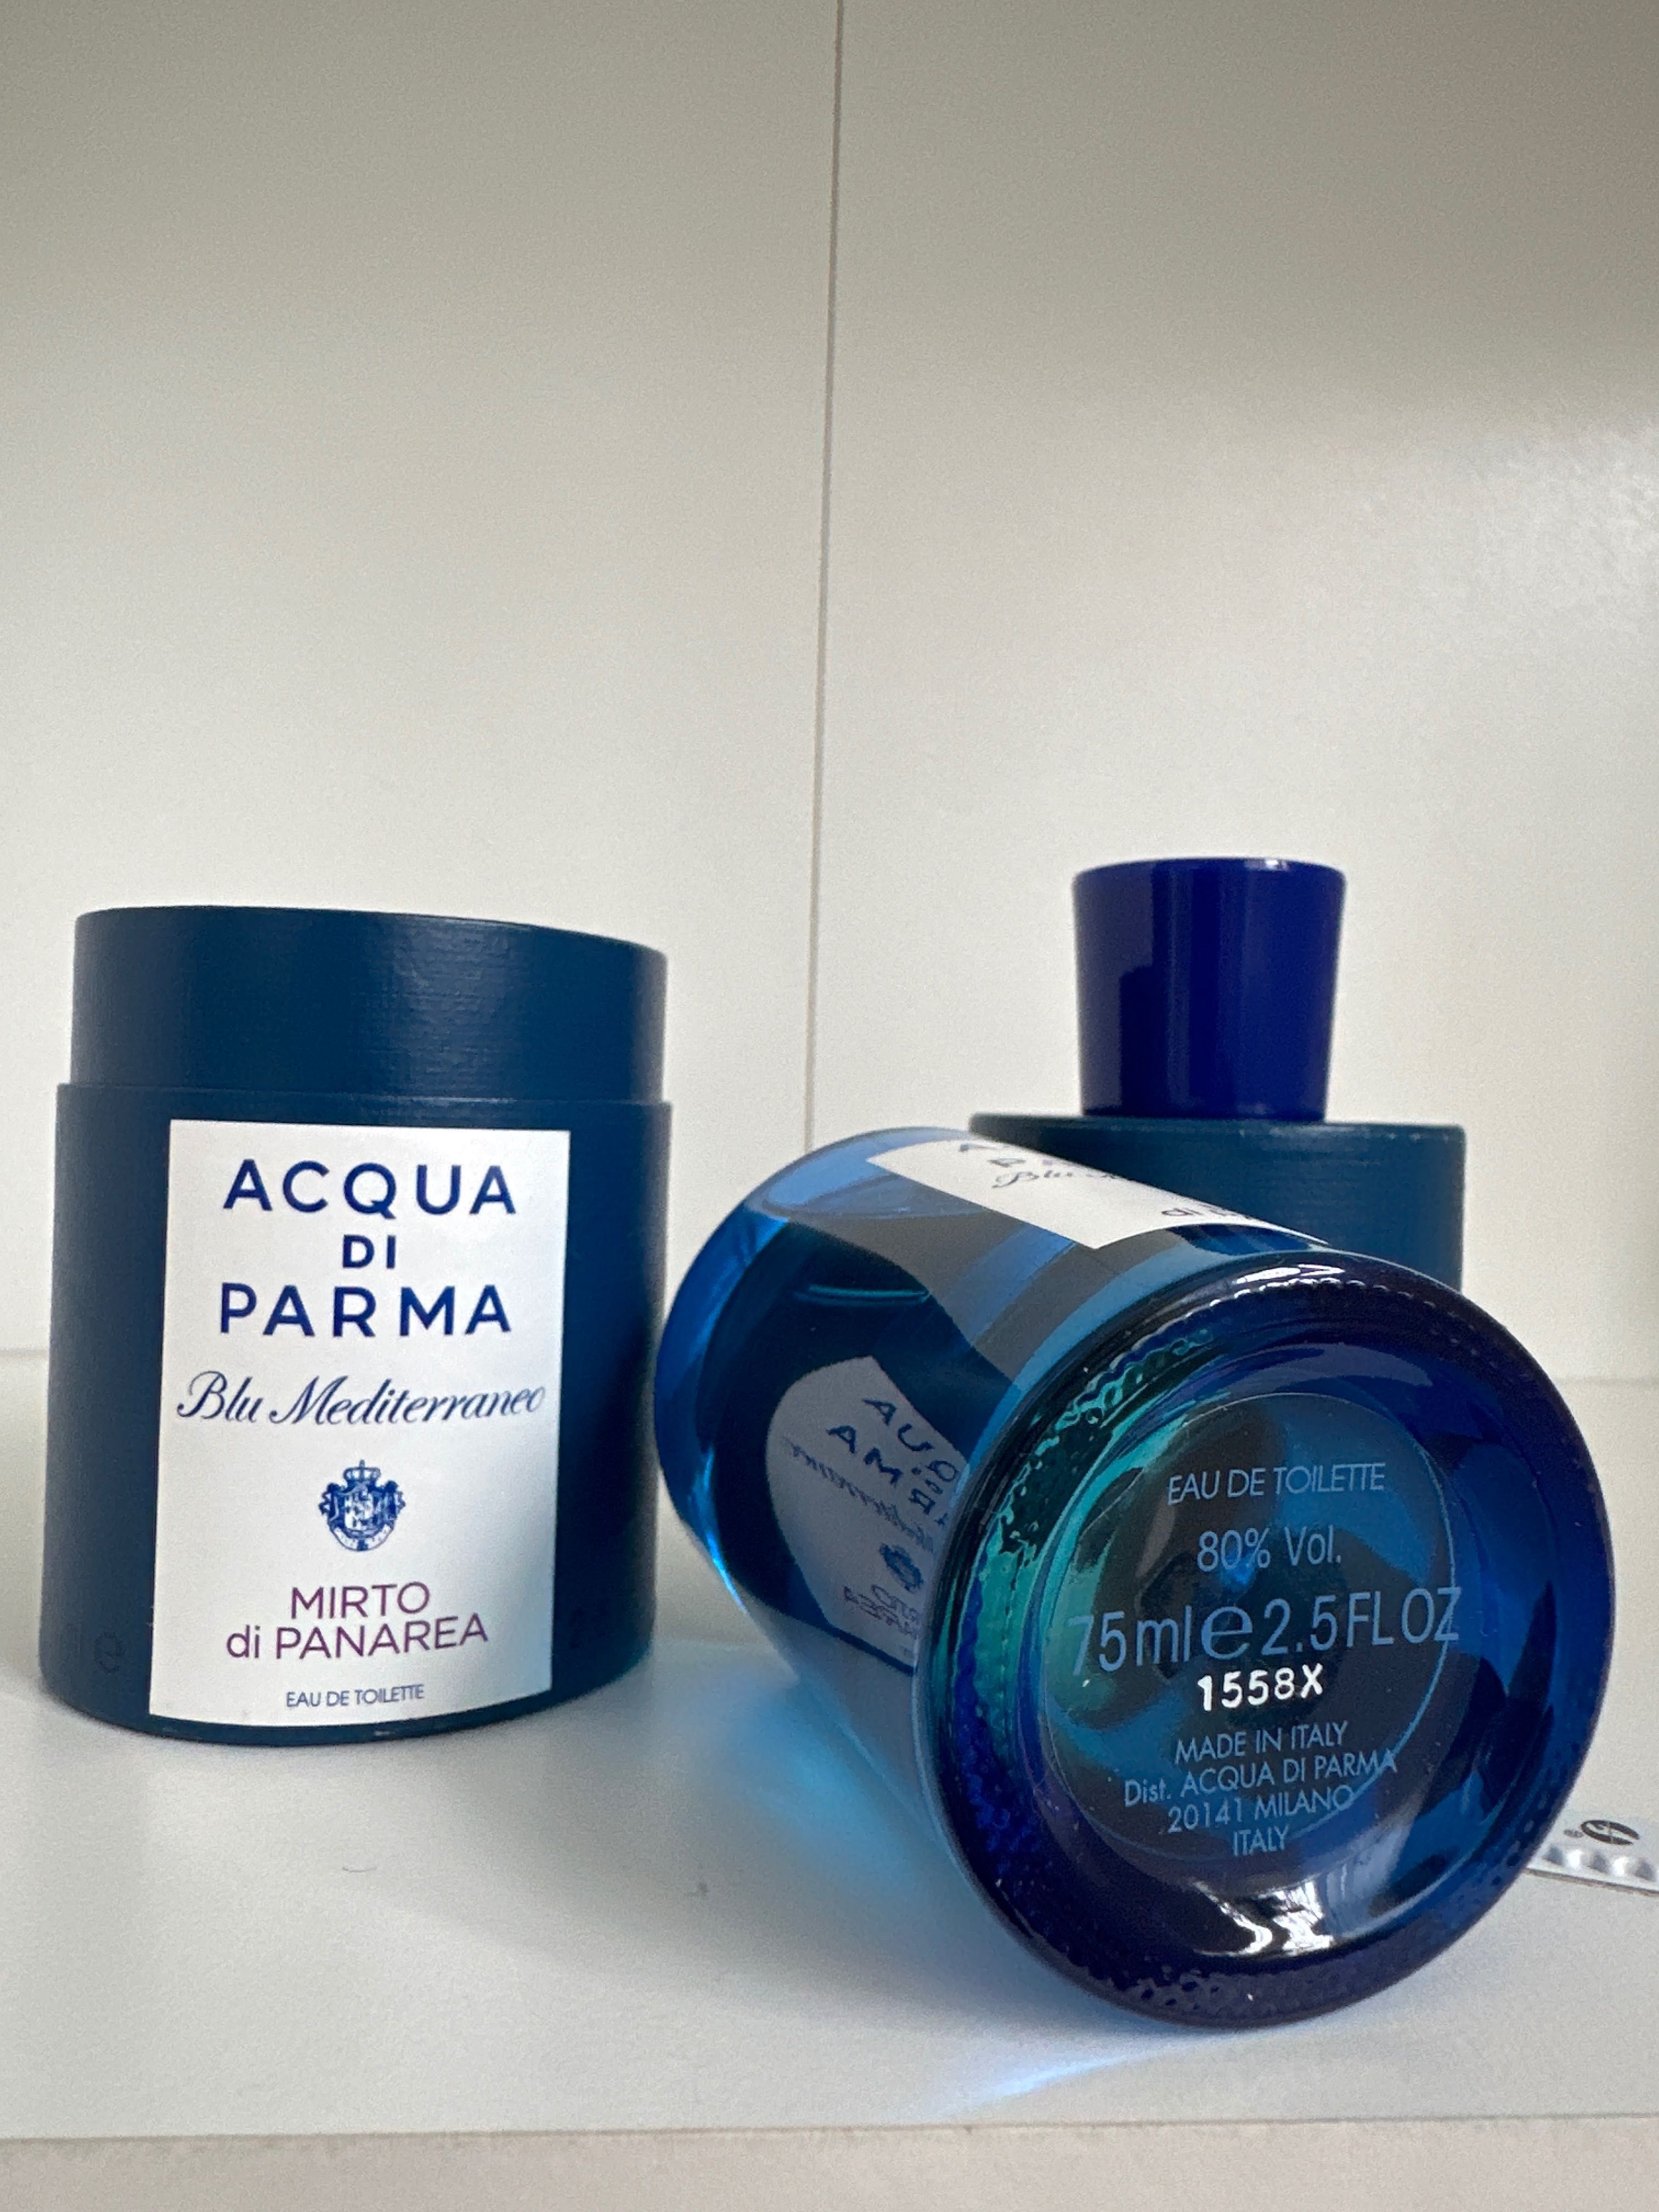 Aqua di Parma, Blue Mediterraneo, Mirto di Panarea